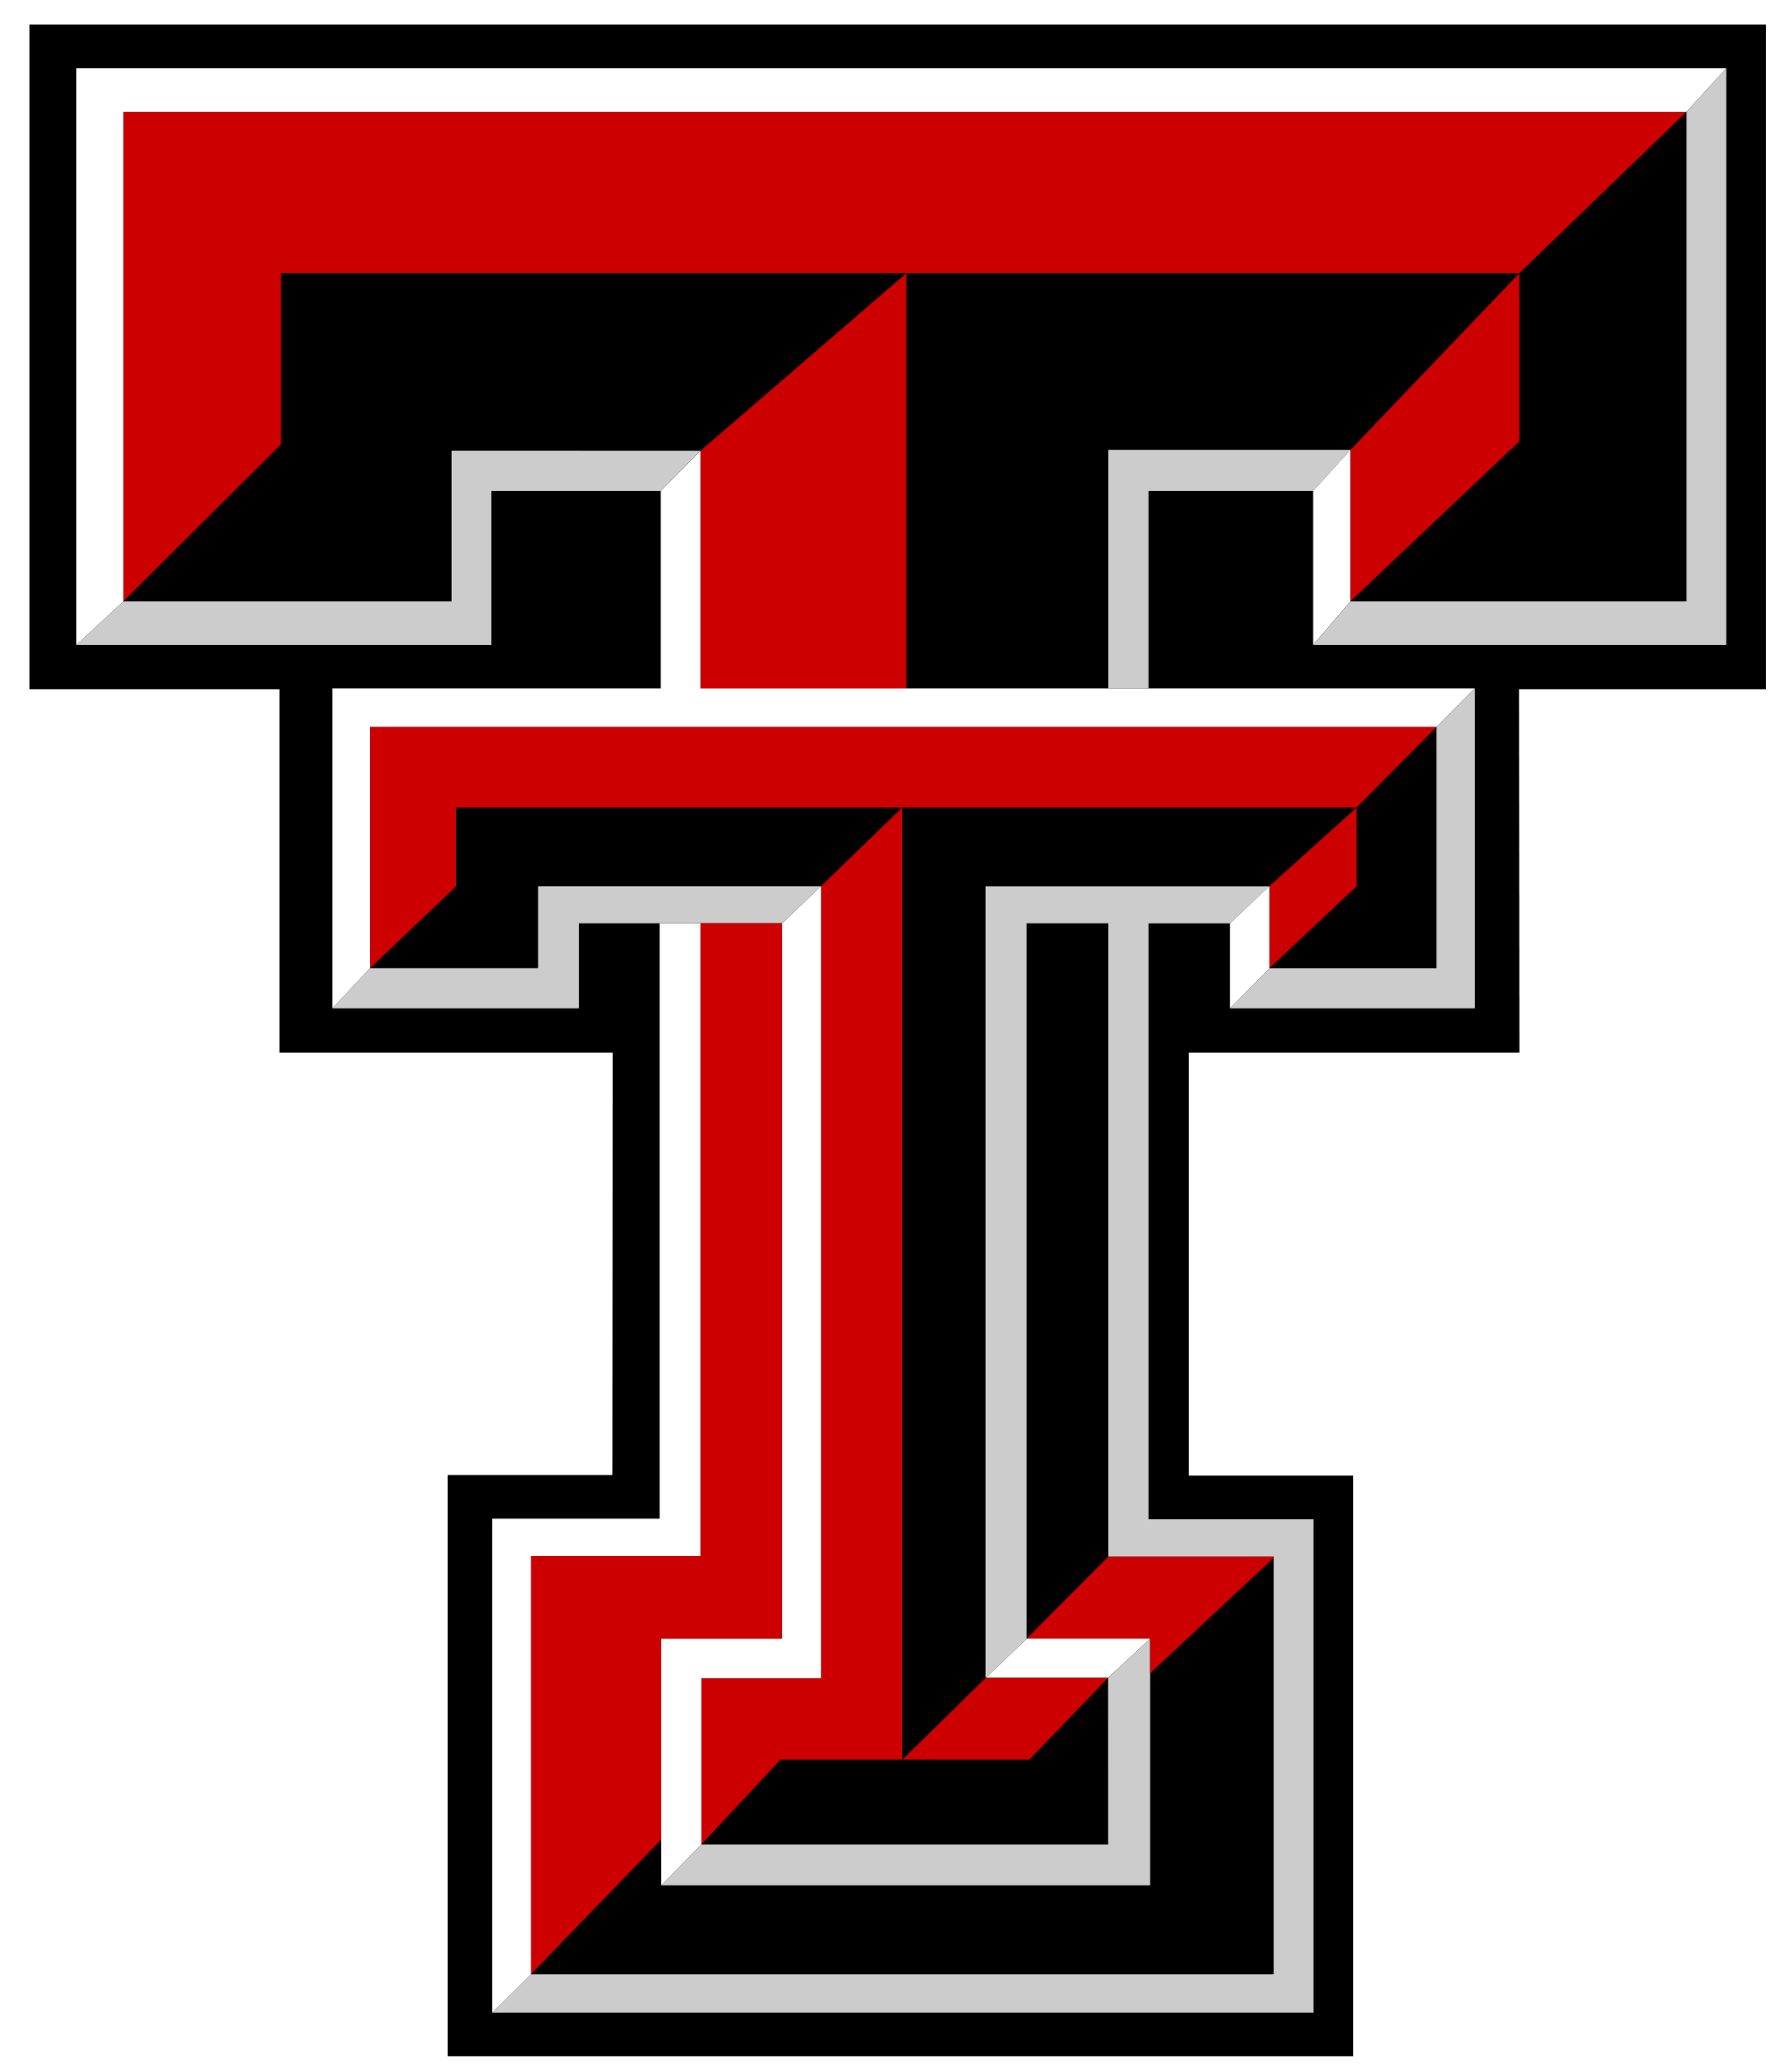 Red Raiders Logo - 2002 Texas Tech Red Raiders football team